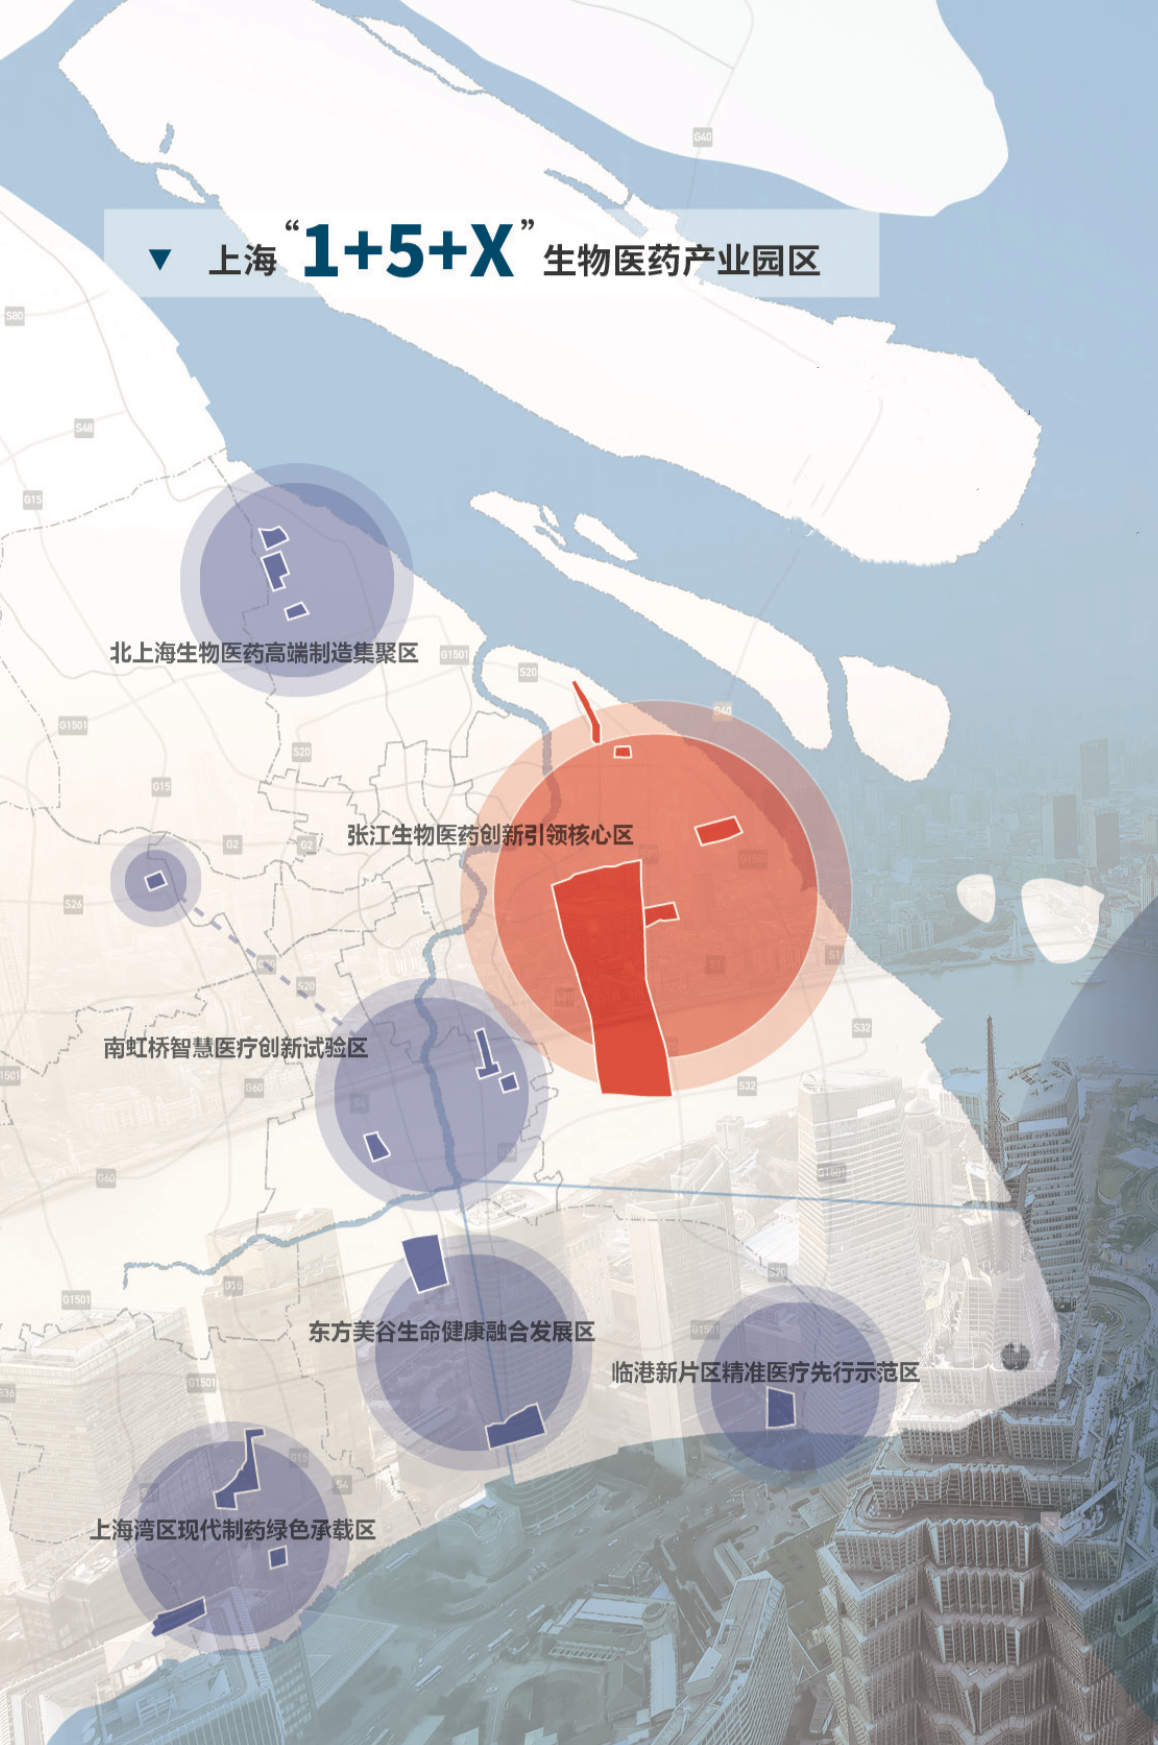 上海“1+5+X”生物医药产业基地布局 本文图片均由上海市经信委供图